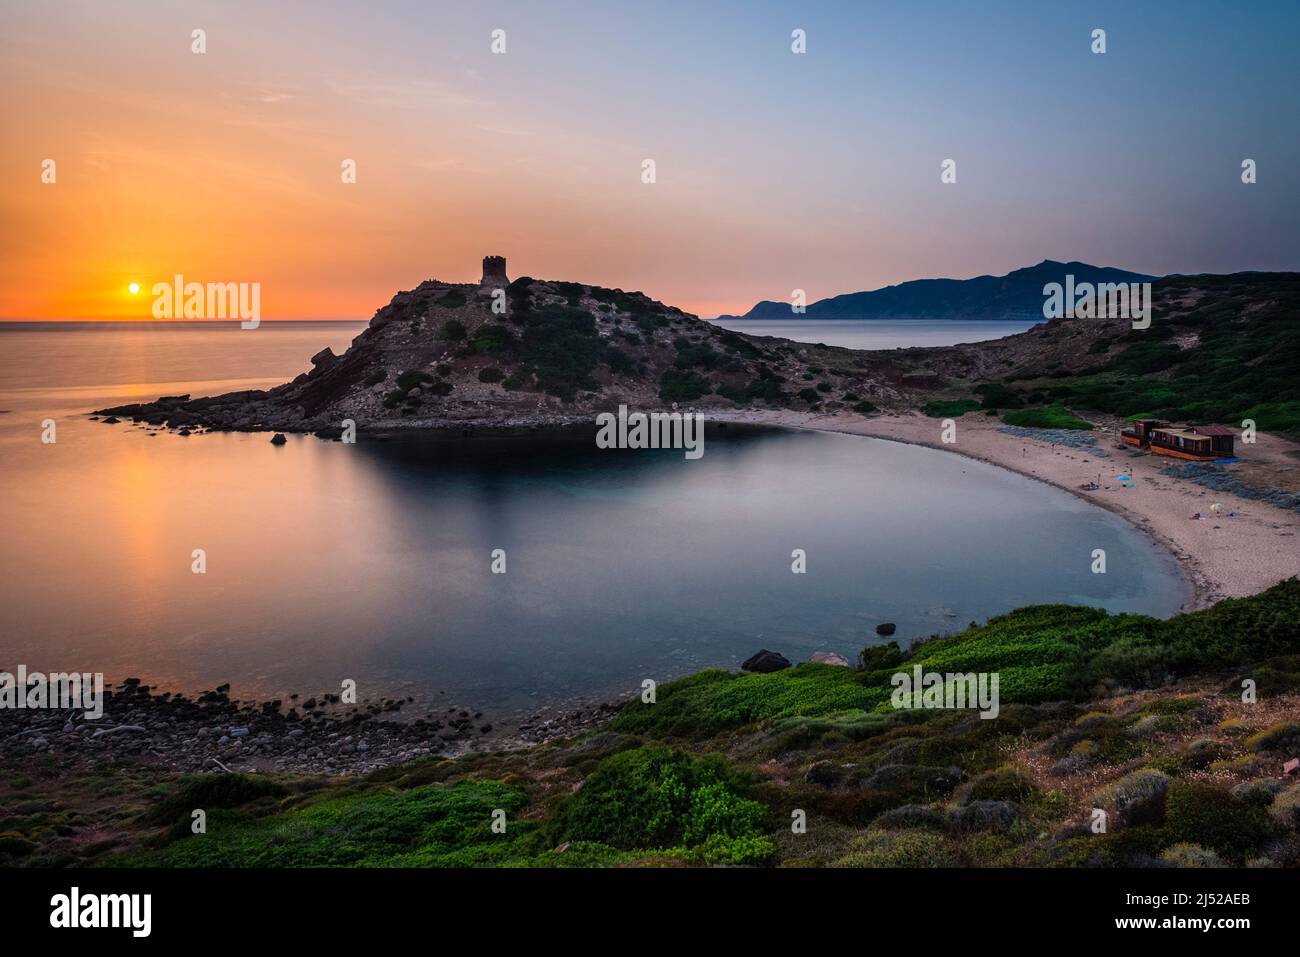 Romantique méditerranée paysage côtier - coucher de soleil à la tour de guet et la plage de la baie Torre del Porticciolo sur la côte ouest de la Sardaigne, Italie Banque D'Images